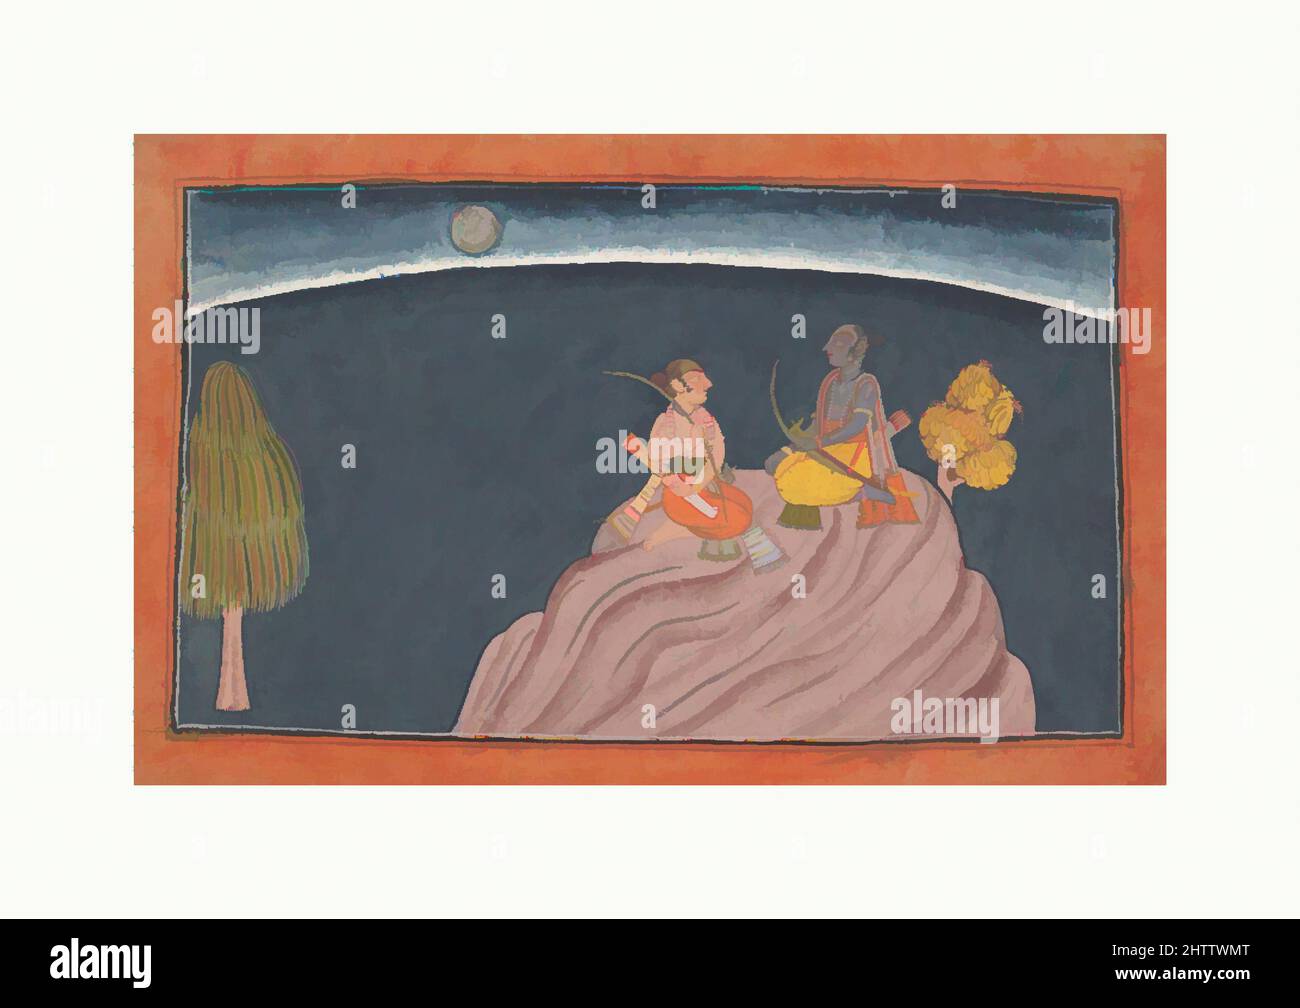 Art inspiré par Rama et Lakshmana sur le mont Pavarasana, ca. 1700, Inde (Punjab Hills, Bahu), encre, aquarelle opaque, et argent sur papier, 7 x 12 1/8 cm (17,8 x 30,8 cm), peintures, Rama est montré avec son frère au sommet du Mont Pavarasana passant une nuit sans sommeil après, oeuvres classiques modernisées par Artotop avec un peu de modernité. Formes, couleur et valeur, impact visuel accrocheur sur l'art émotions par la liberté d'œuvres d'art d'une manière contemporaine. Un message intemporel qui cherche une nouvelle direction créative. Artistes qui se tournent vers le support numérique et créent le NFT Artotop Banque D'Images